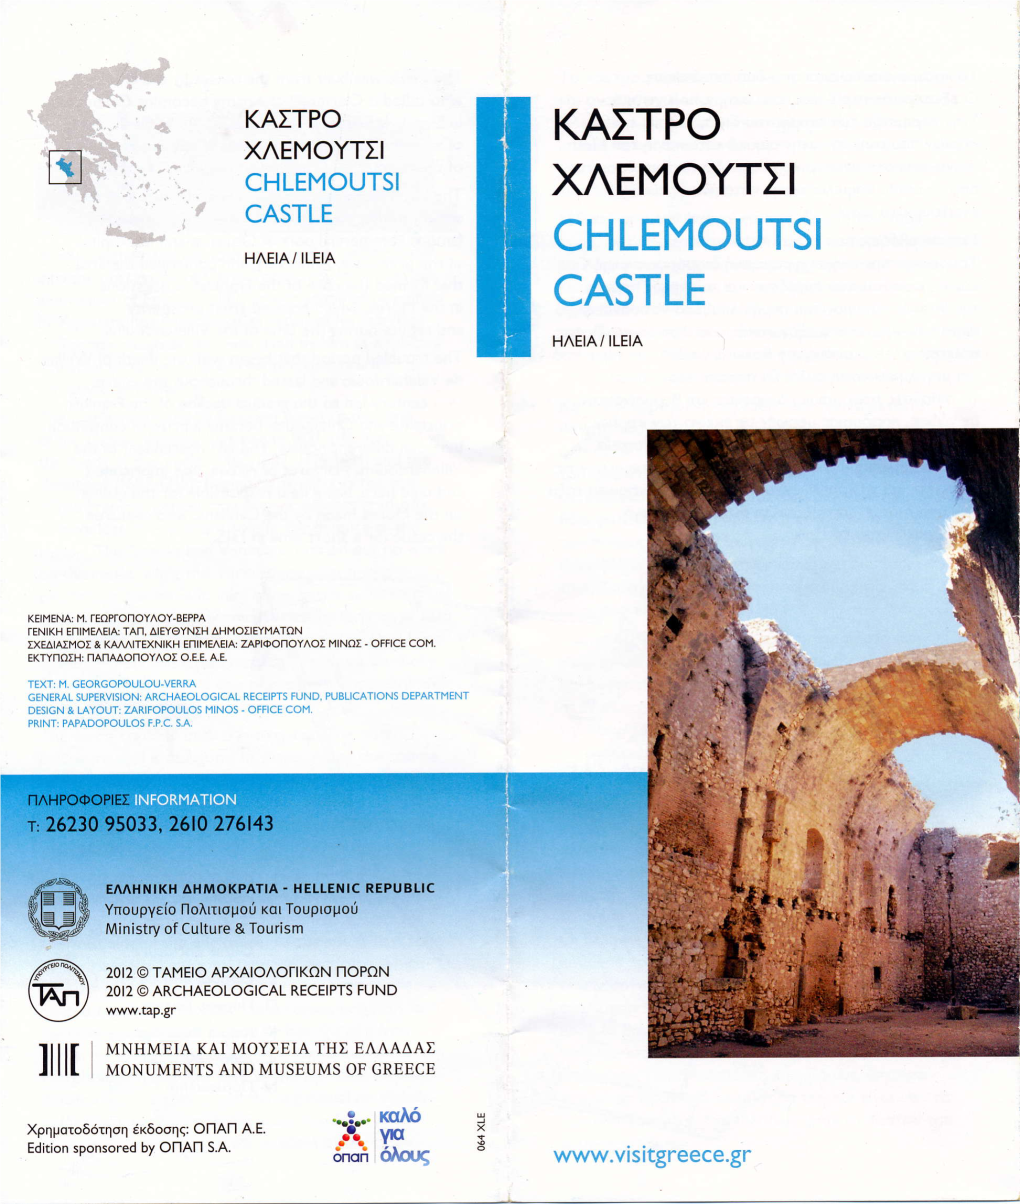 Kaitpo Xaemoytii Chlemoutsi Xaemoytii Castle Chlemoutsi Haeia/ Ileia Castle